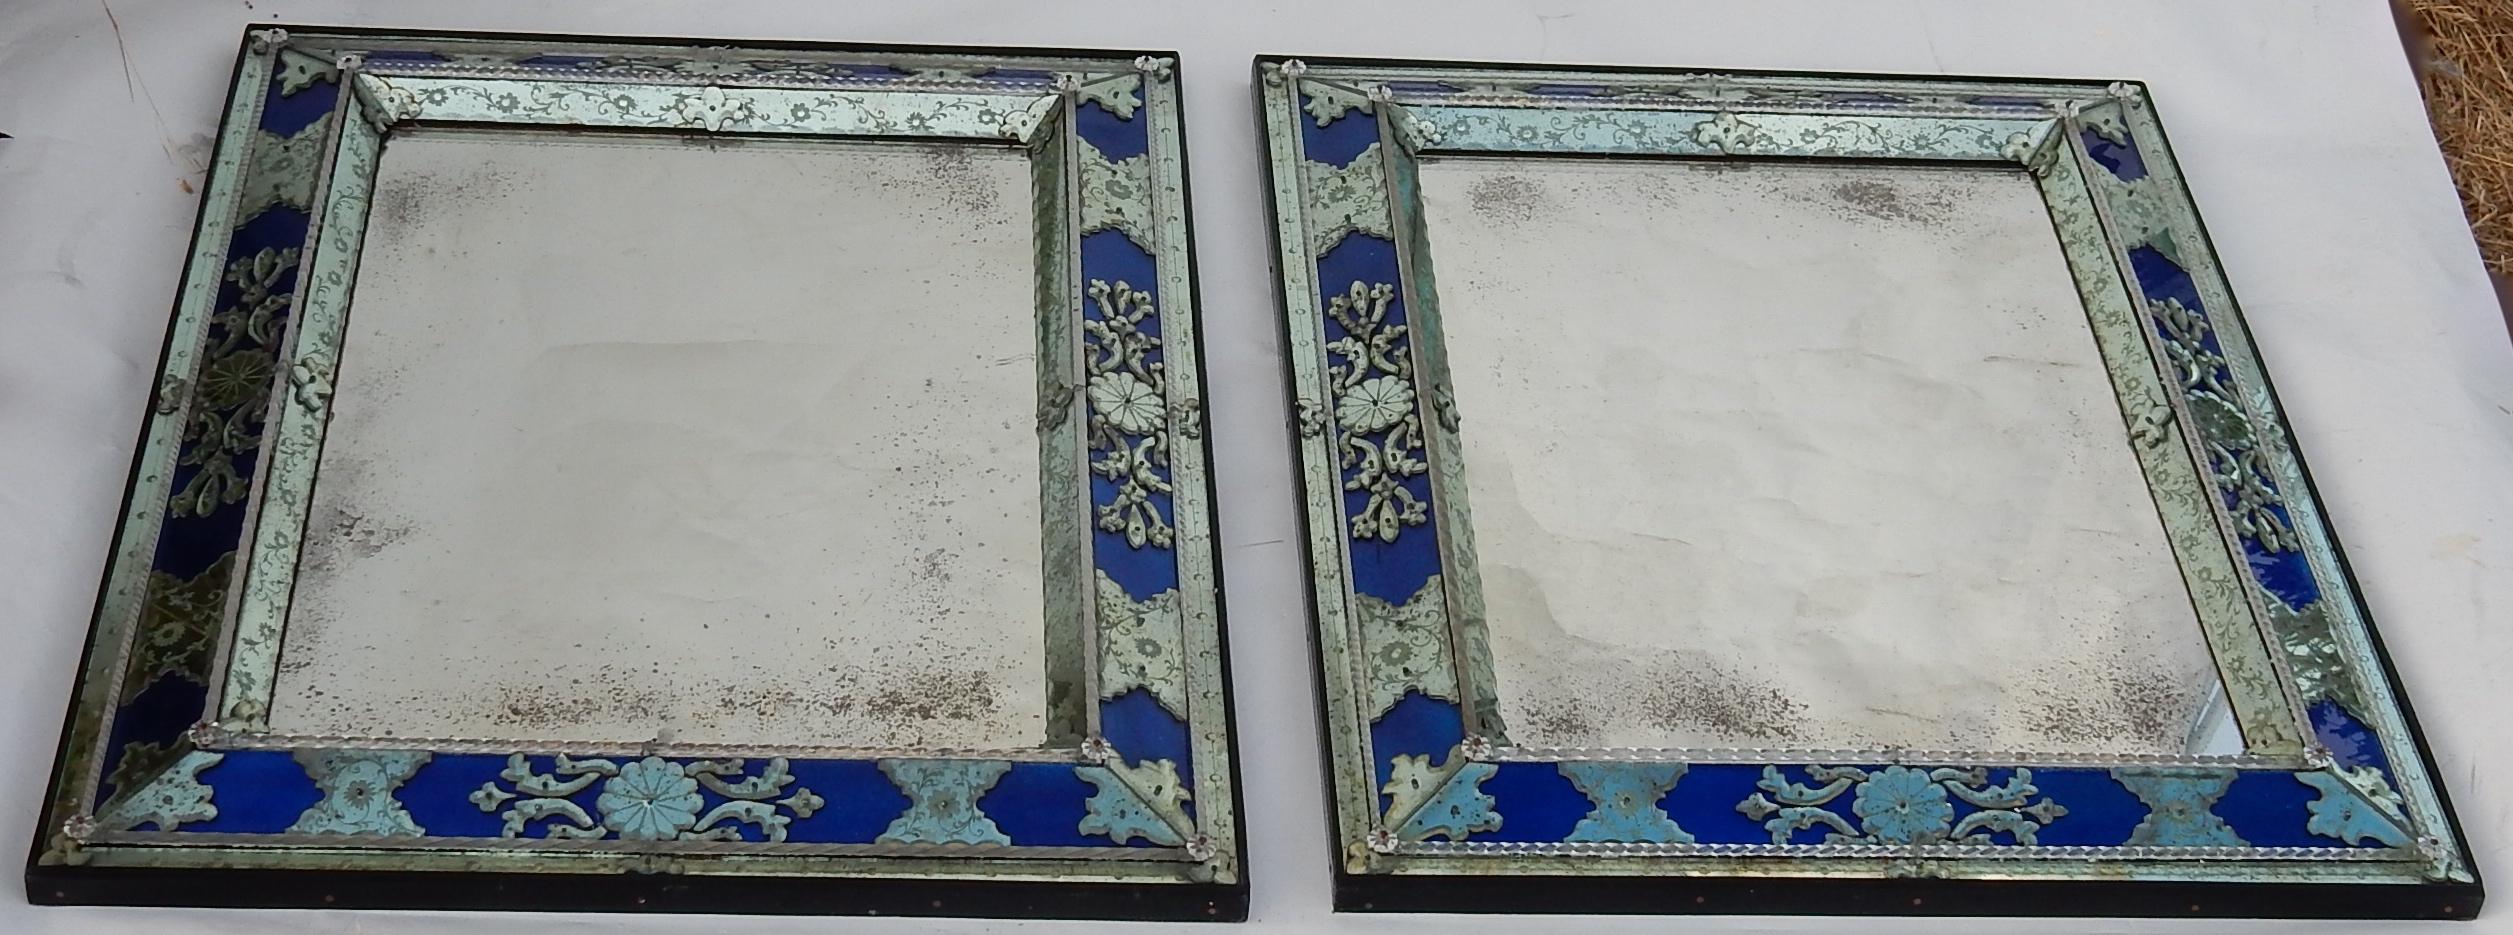 Paire de miroirs italiens de style Louis XIV avec miroirs oxydés vieillis, travail artisanal commandé, le centre est orné d'une coupe avec gravures, et le cadre alterne entre verres bleus et éléments de miroir. Taille : H 96 cm.
      